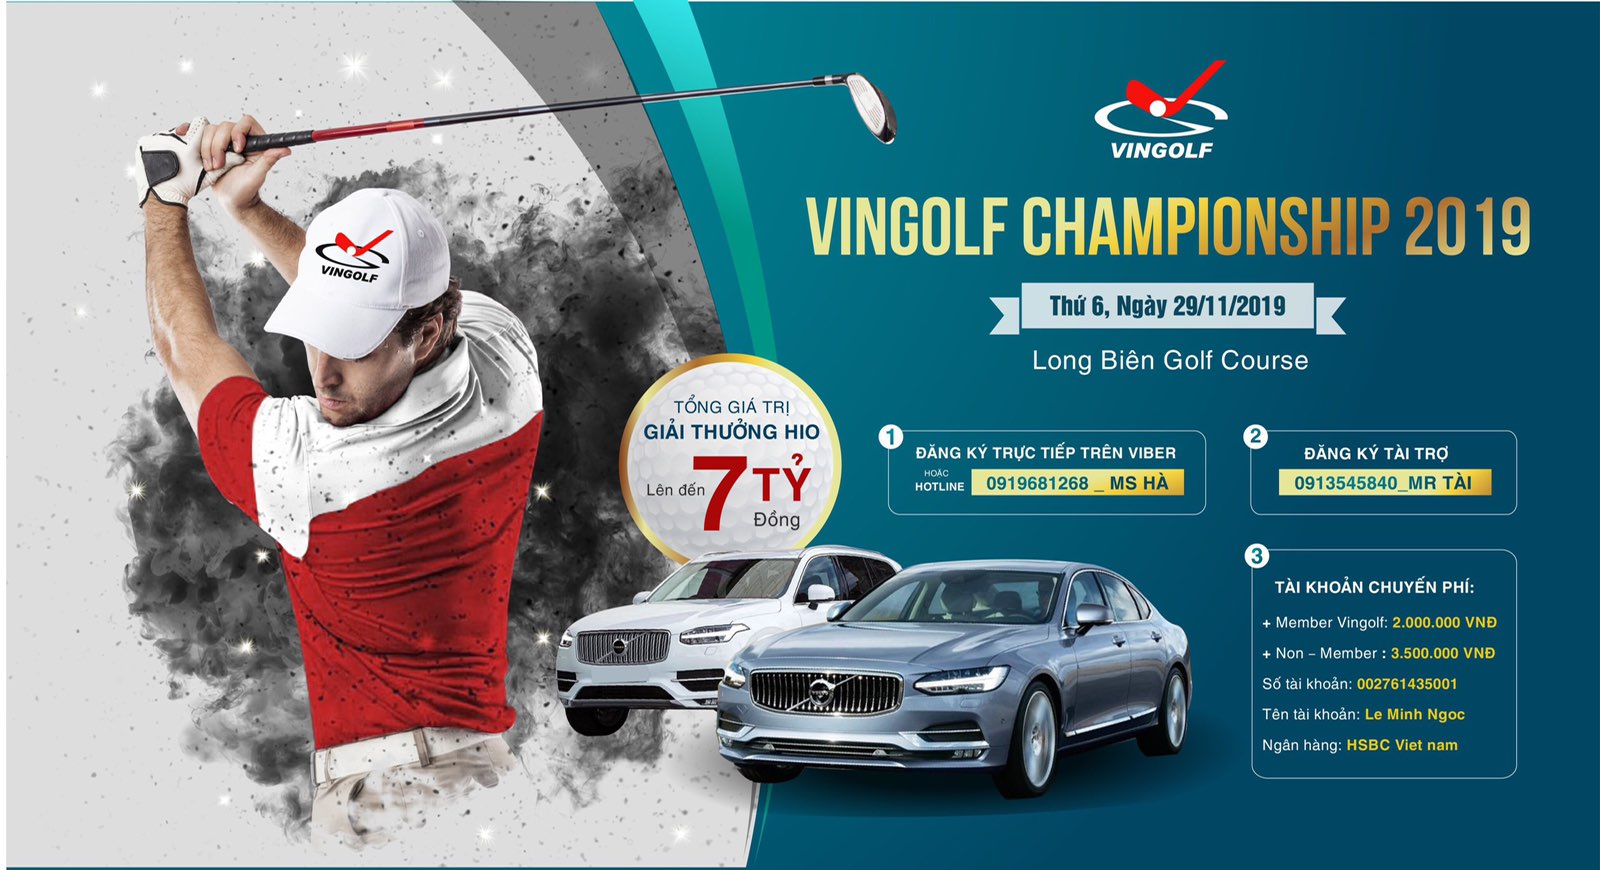 Vingolf Championship 2019: Hấp dẫn với tổng giải thưởng 7 tỷ đồng